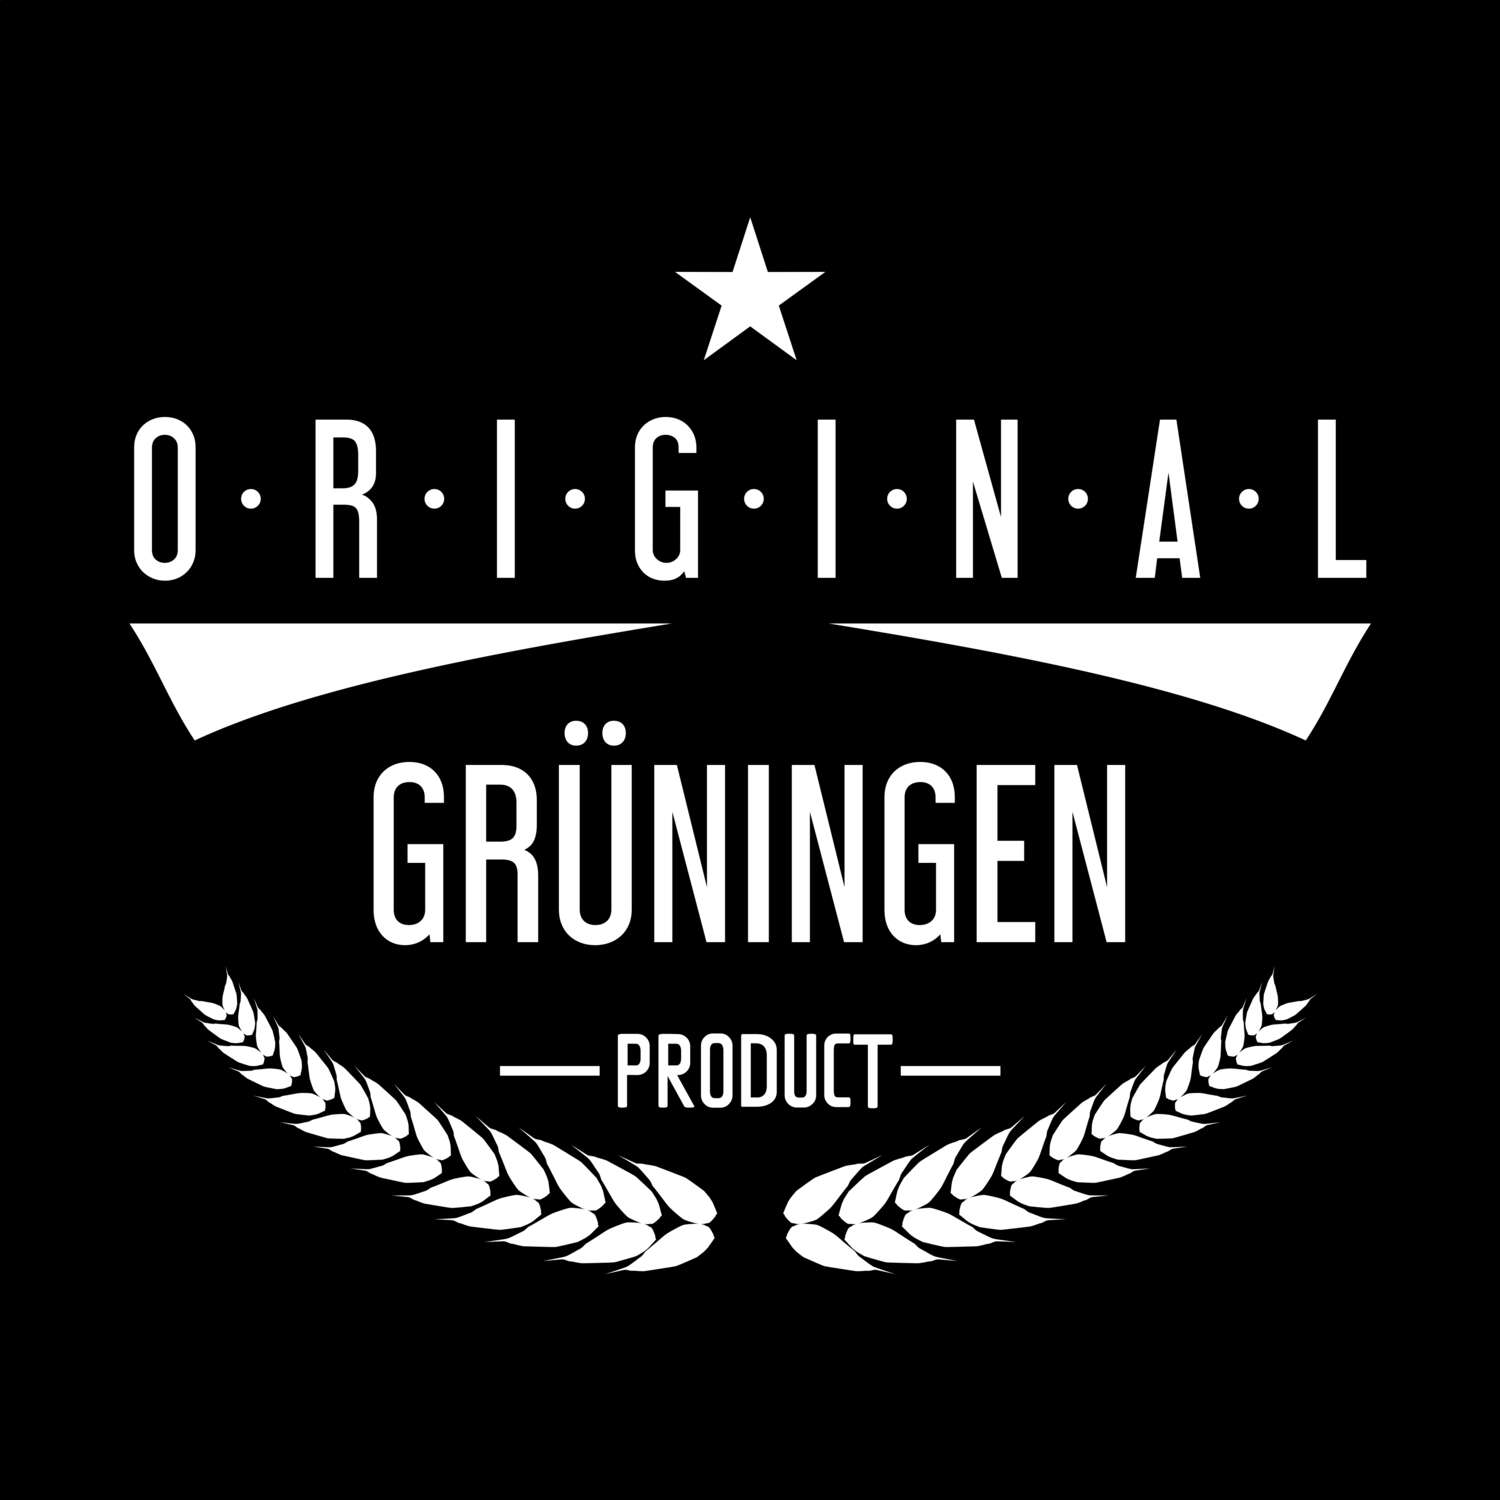 Grüningen T-Shirt »Original Product«